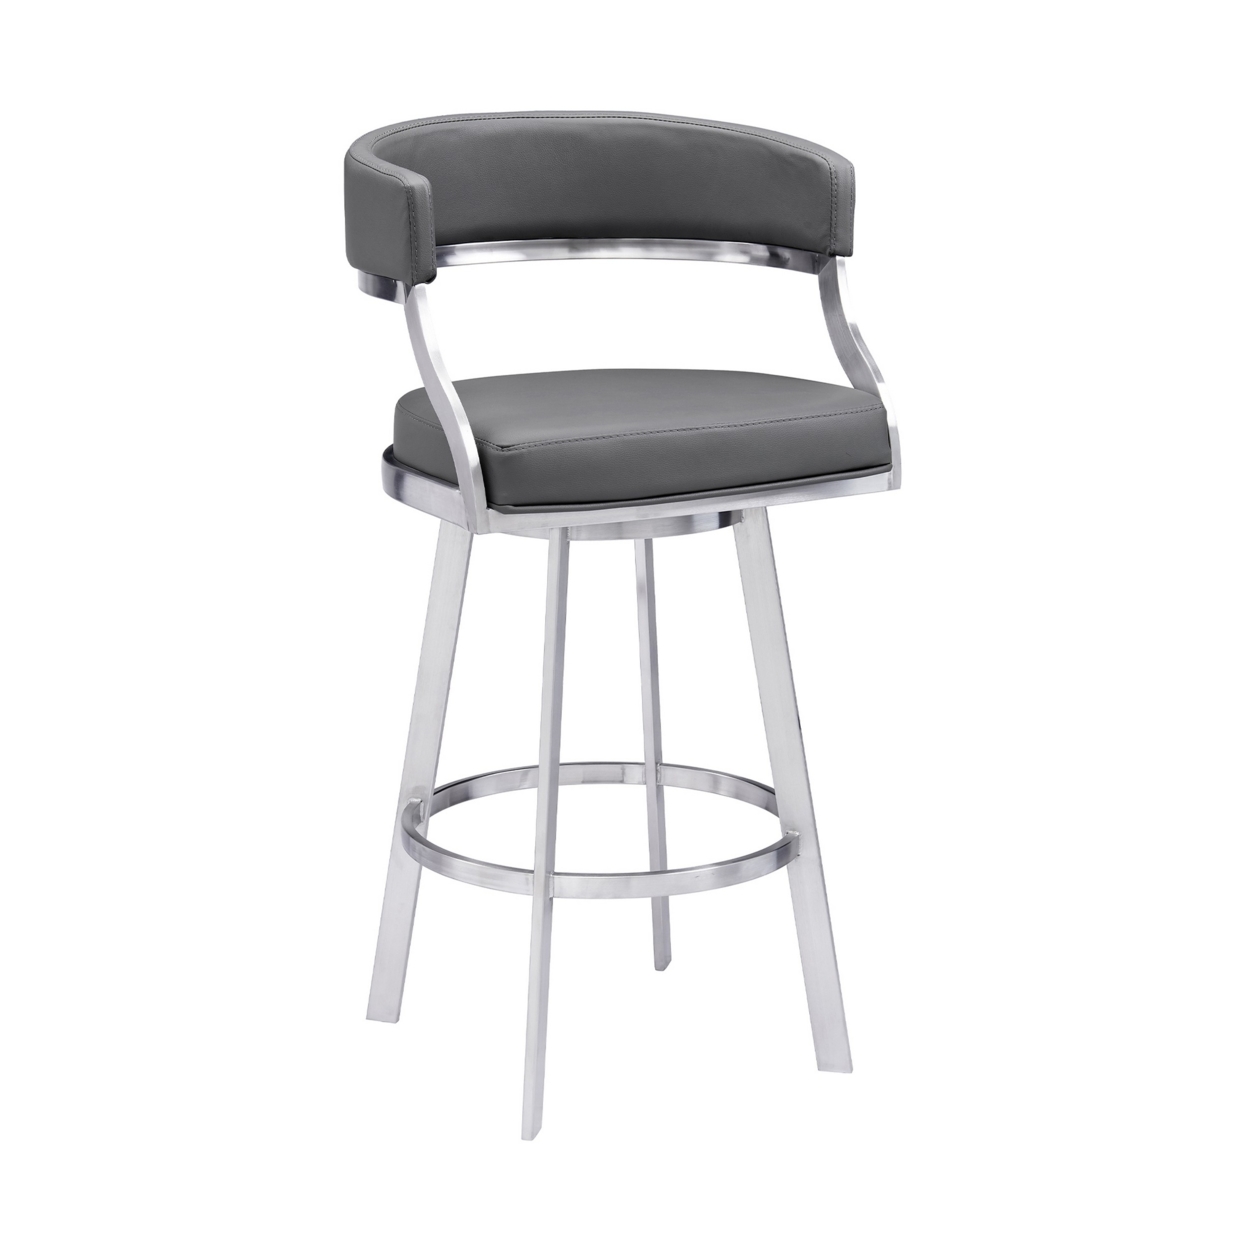 Ava 30 Inch Swivel Bar Stool Chair, Open Back, Steel, Gray Faux Leather- Saltoro Sherpi